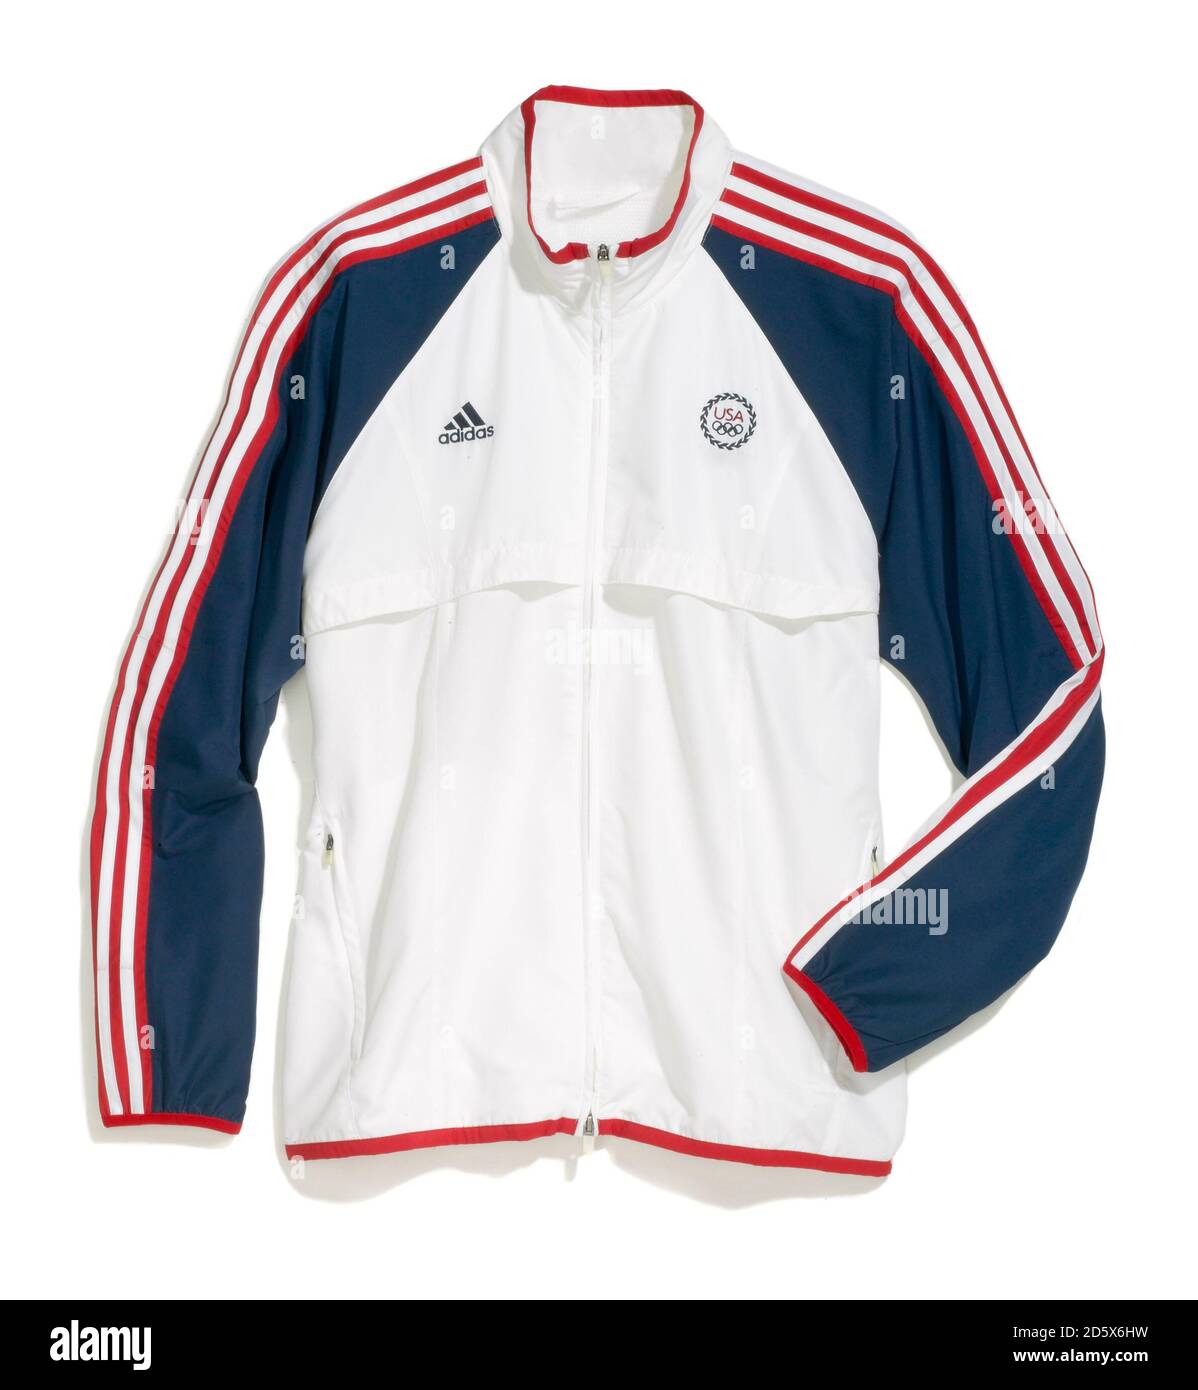 Veste olympique zippée rouge, blanche et bleue imperméable d'Adidas  photographiée sur fond blanc Photo Stock - Alamy